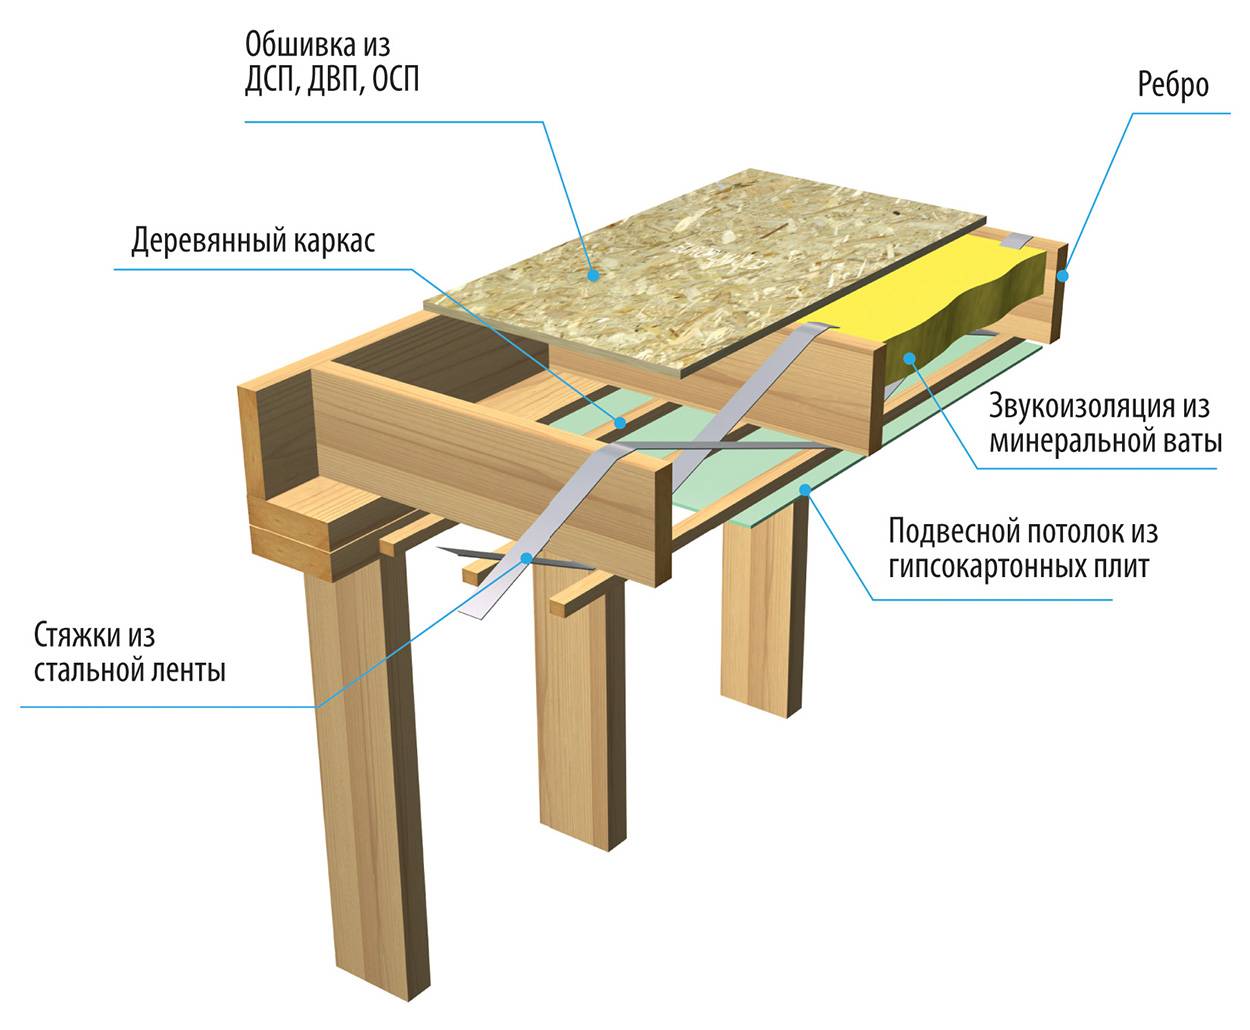 Чердачное перекрытие по деревянным балкам: обзор лучших конструкций и советы по выбору балок